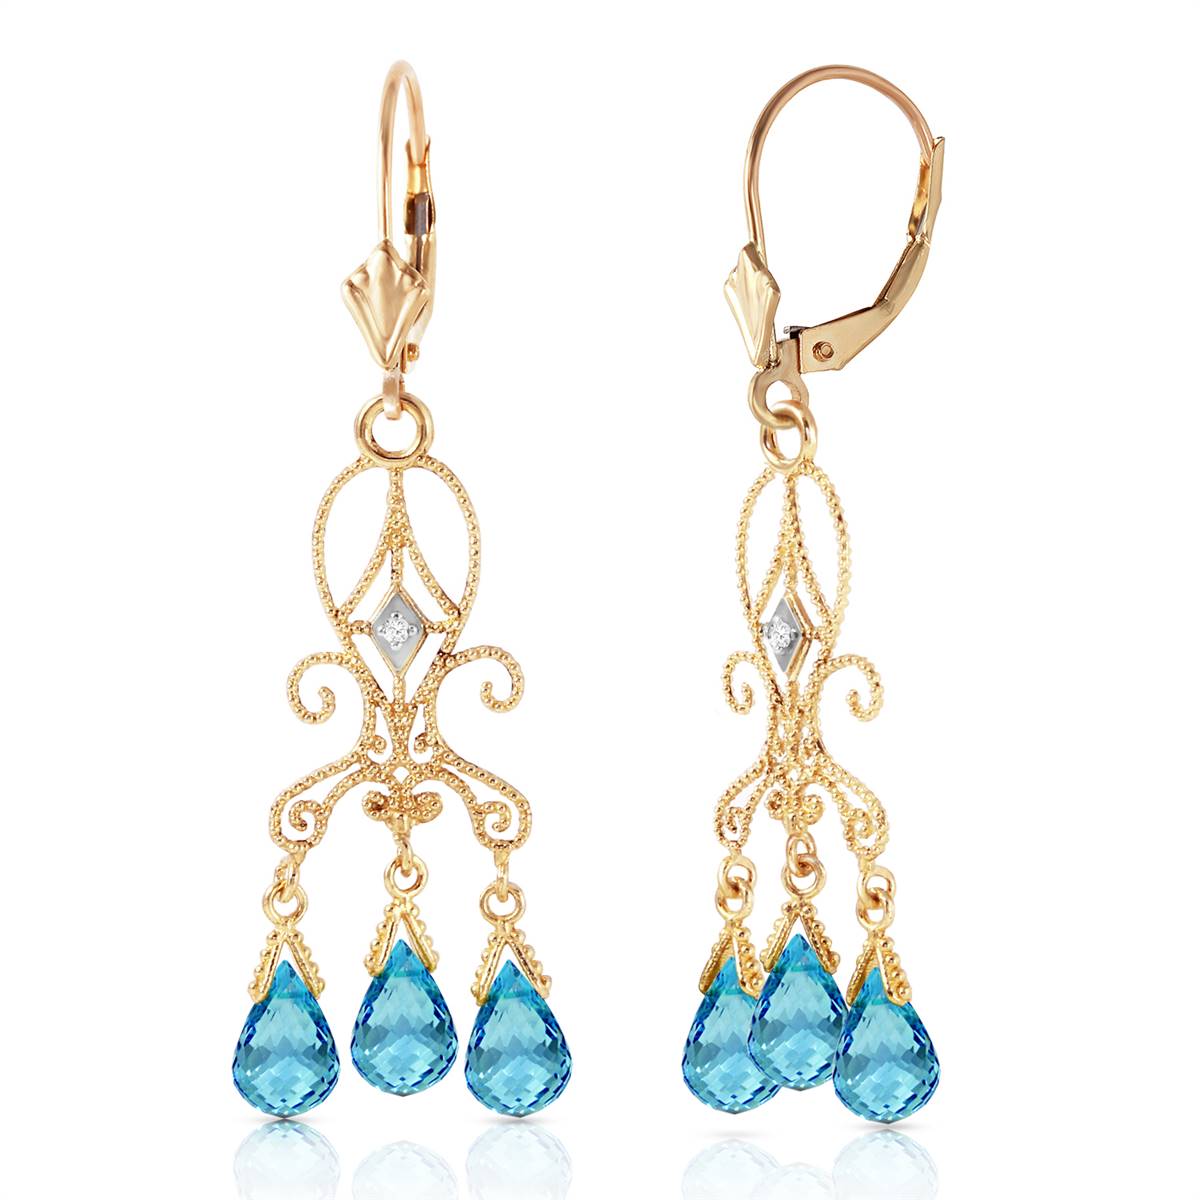 4.81 Carat 14K Solid Yellow Gold Chandelier Diamond Earrings Blue Topaz